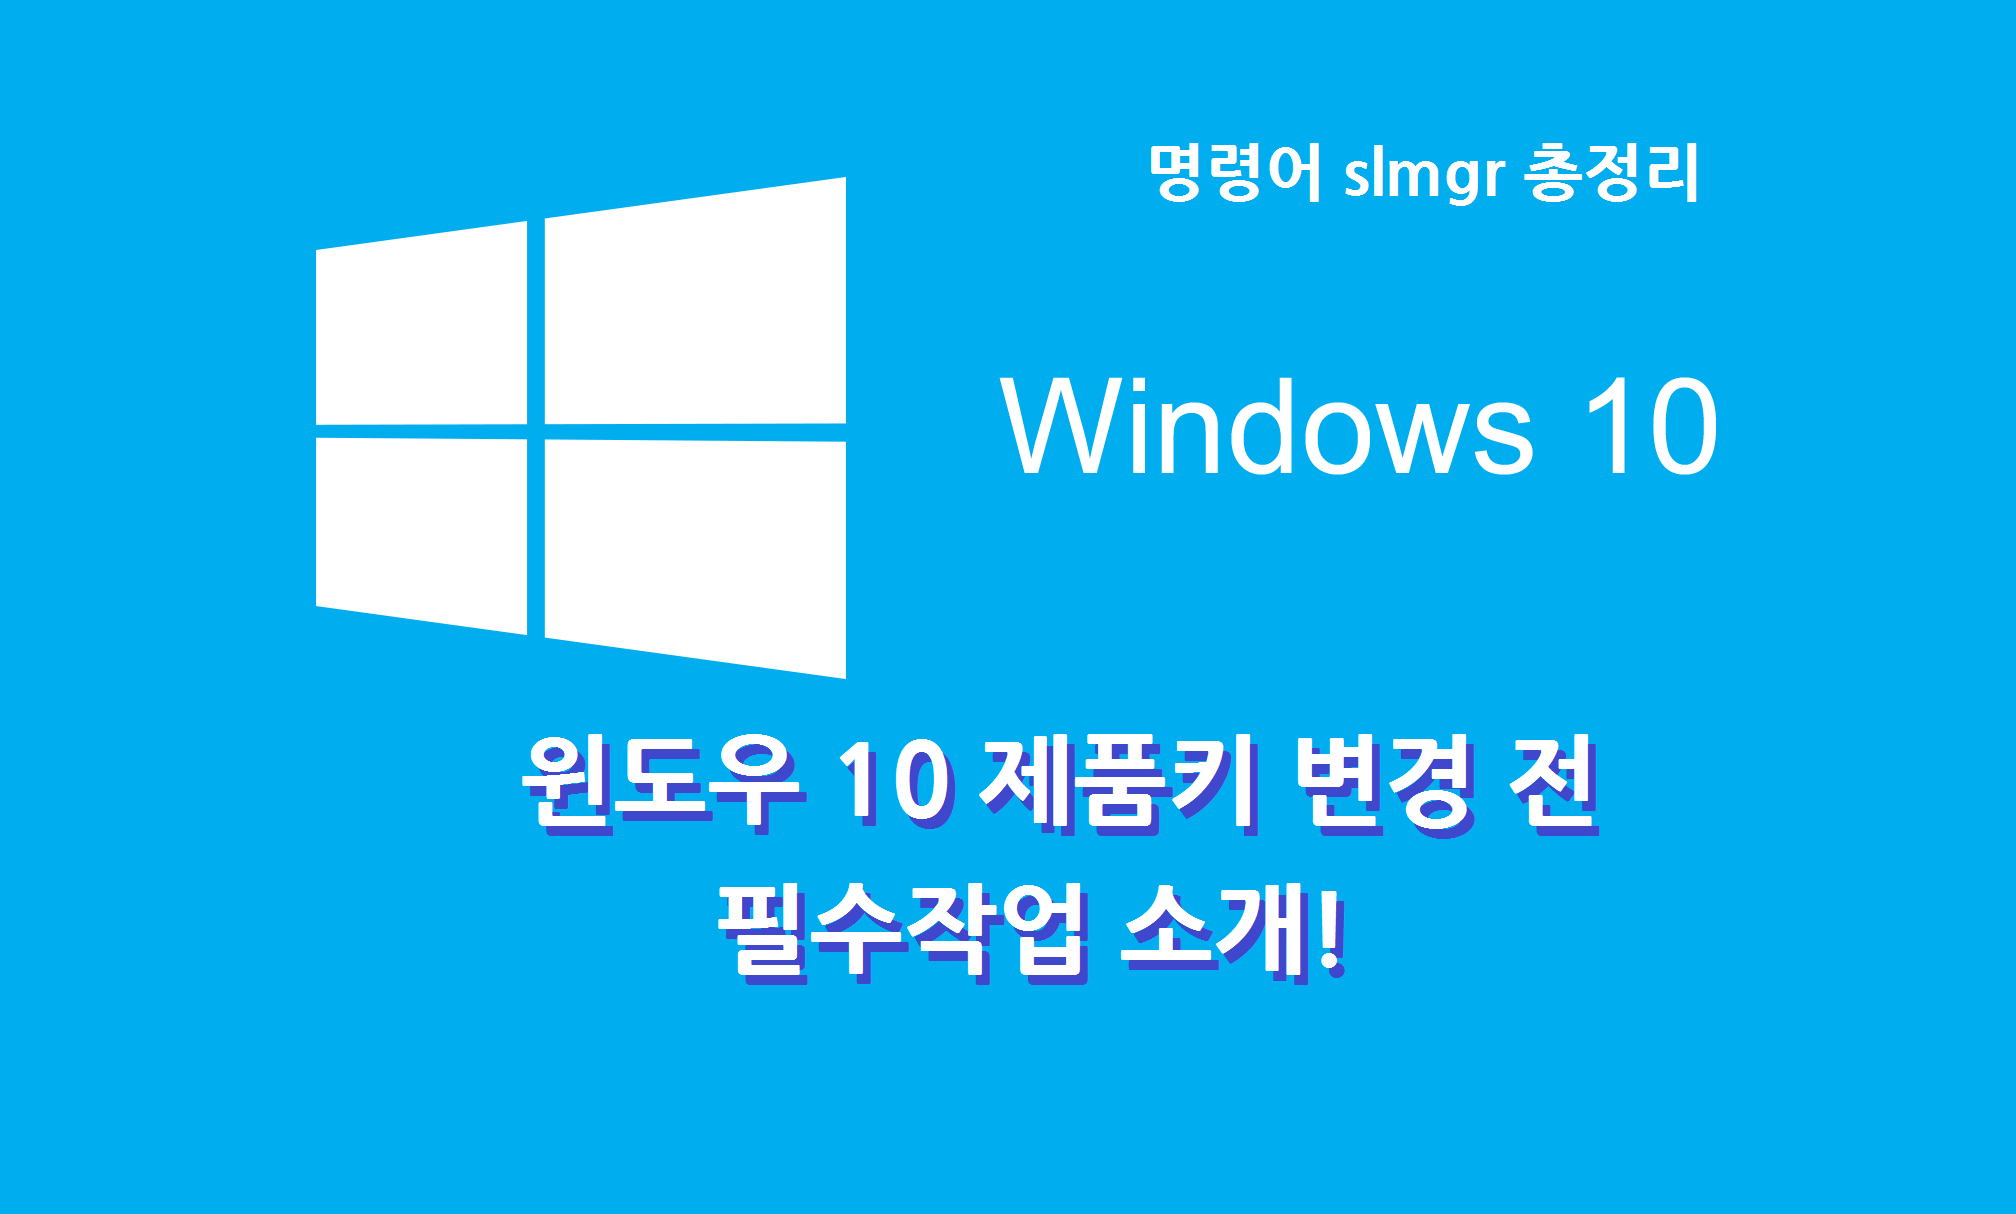 Windows 10 제품키 변경 전 필수 작업, 제품키 등록, 삭제, 변경, 정품확인 명령어, 레지스트리 삭제하는 방법 (Fear. cmd slmgr 기능 총 정리)